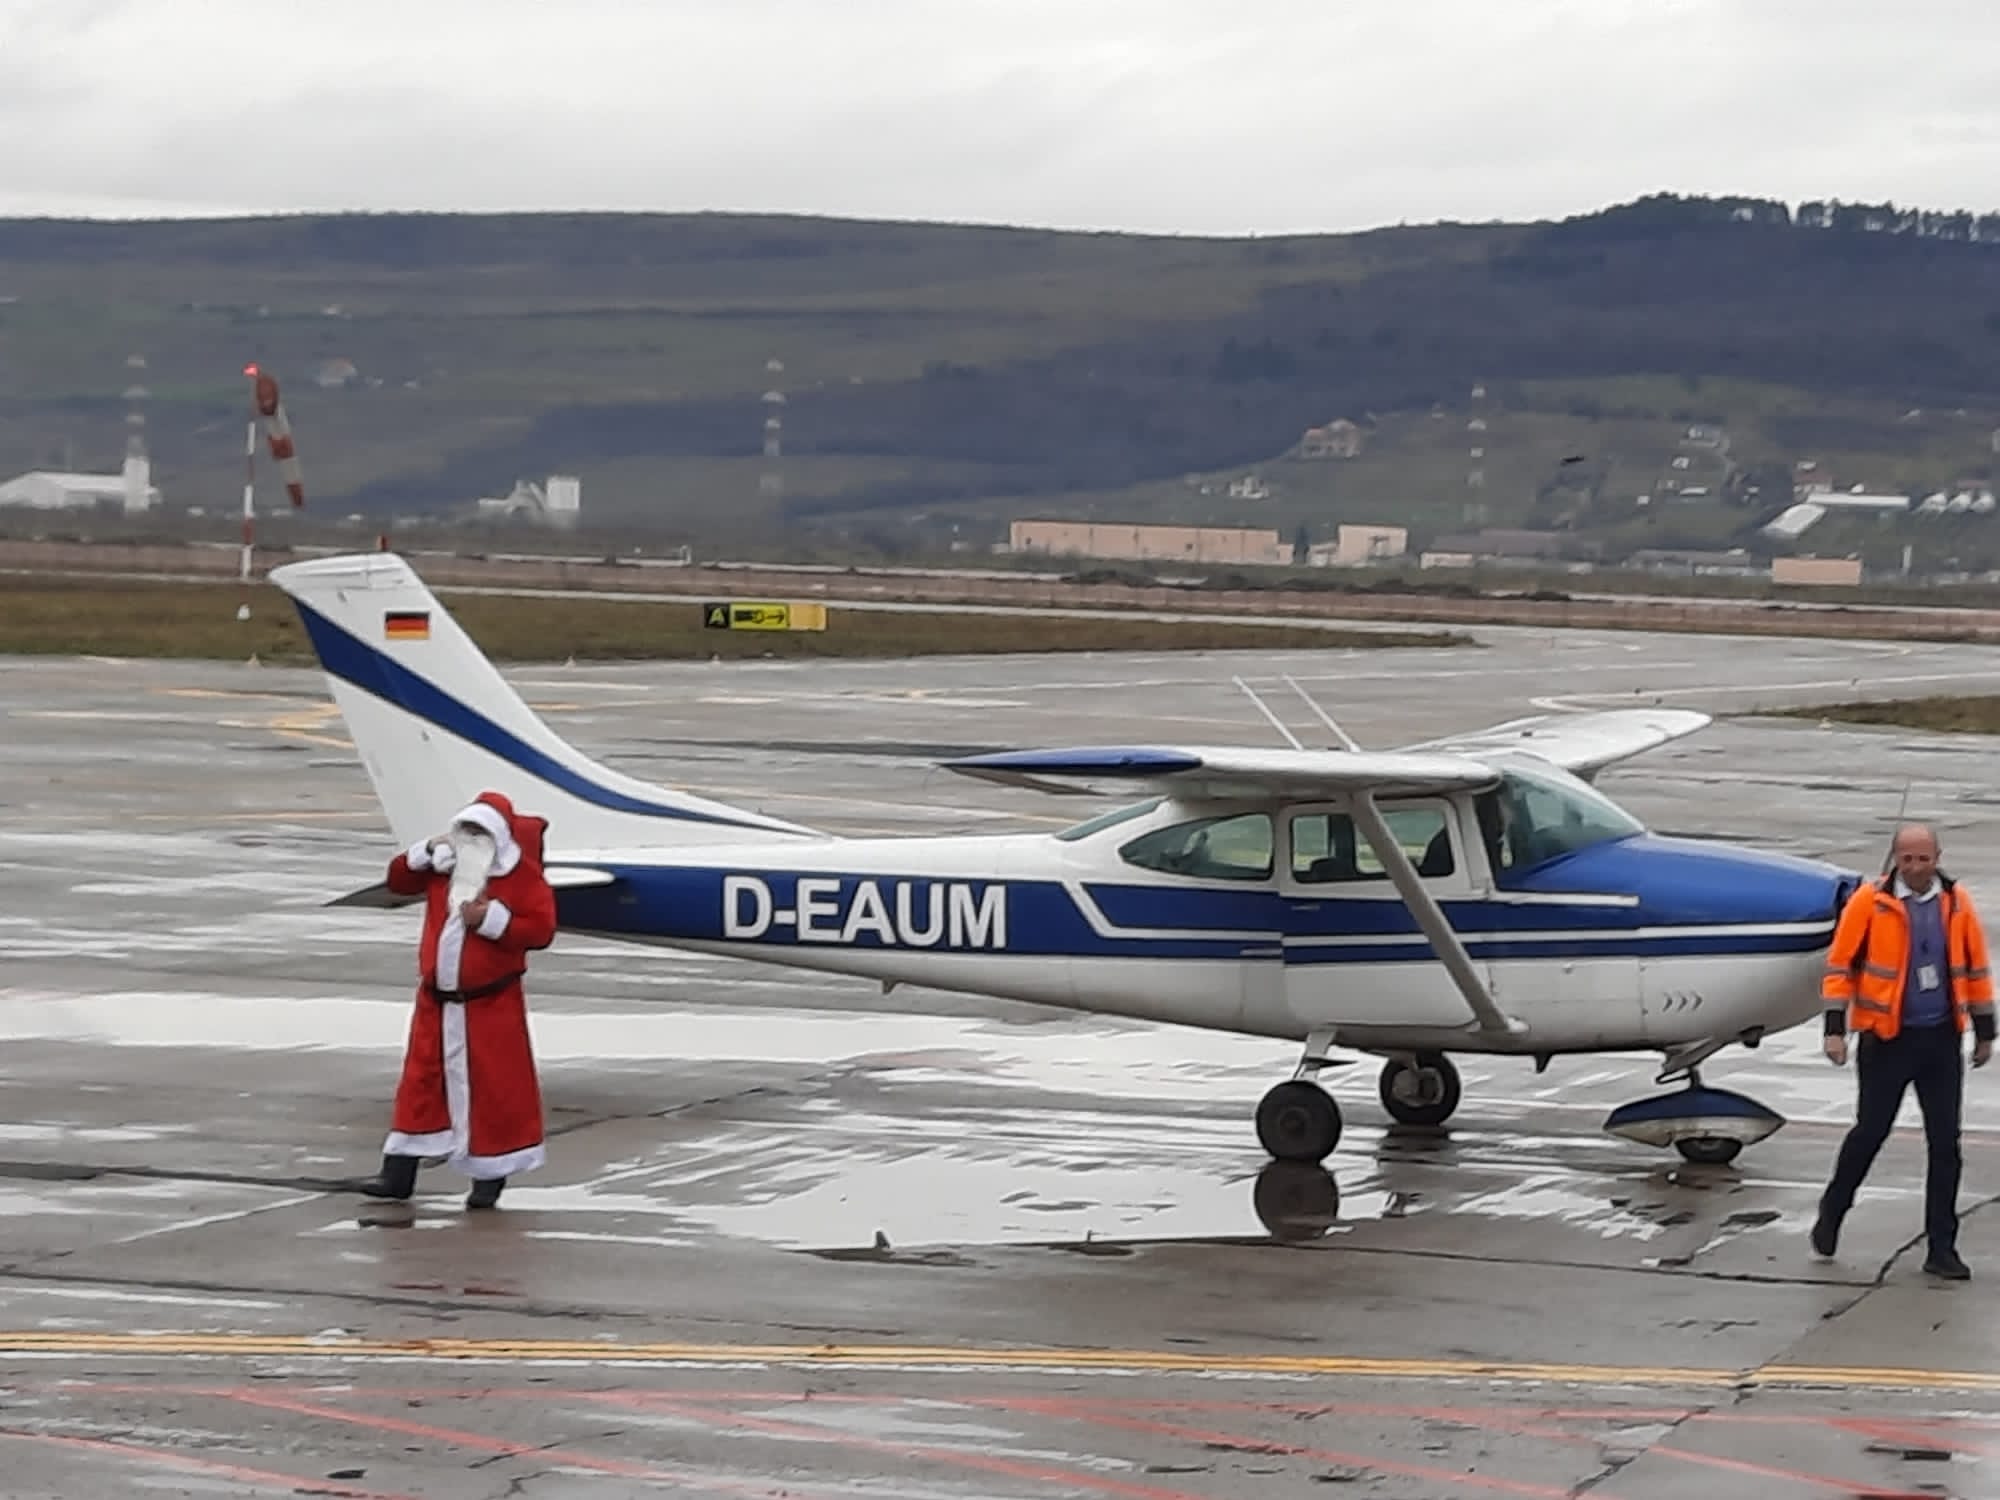 Chiar dacă mai sunt câteva zile până la Crăciun, Moș Crăciun a sosit mai repede în Cluj-Napoca/ Foto: Aeroportul Internațional Avram Iancu Cluj/Facebook